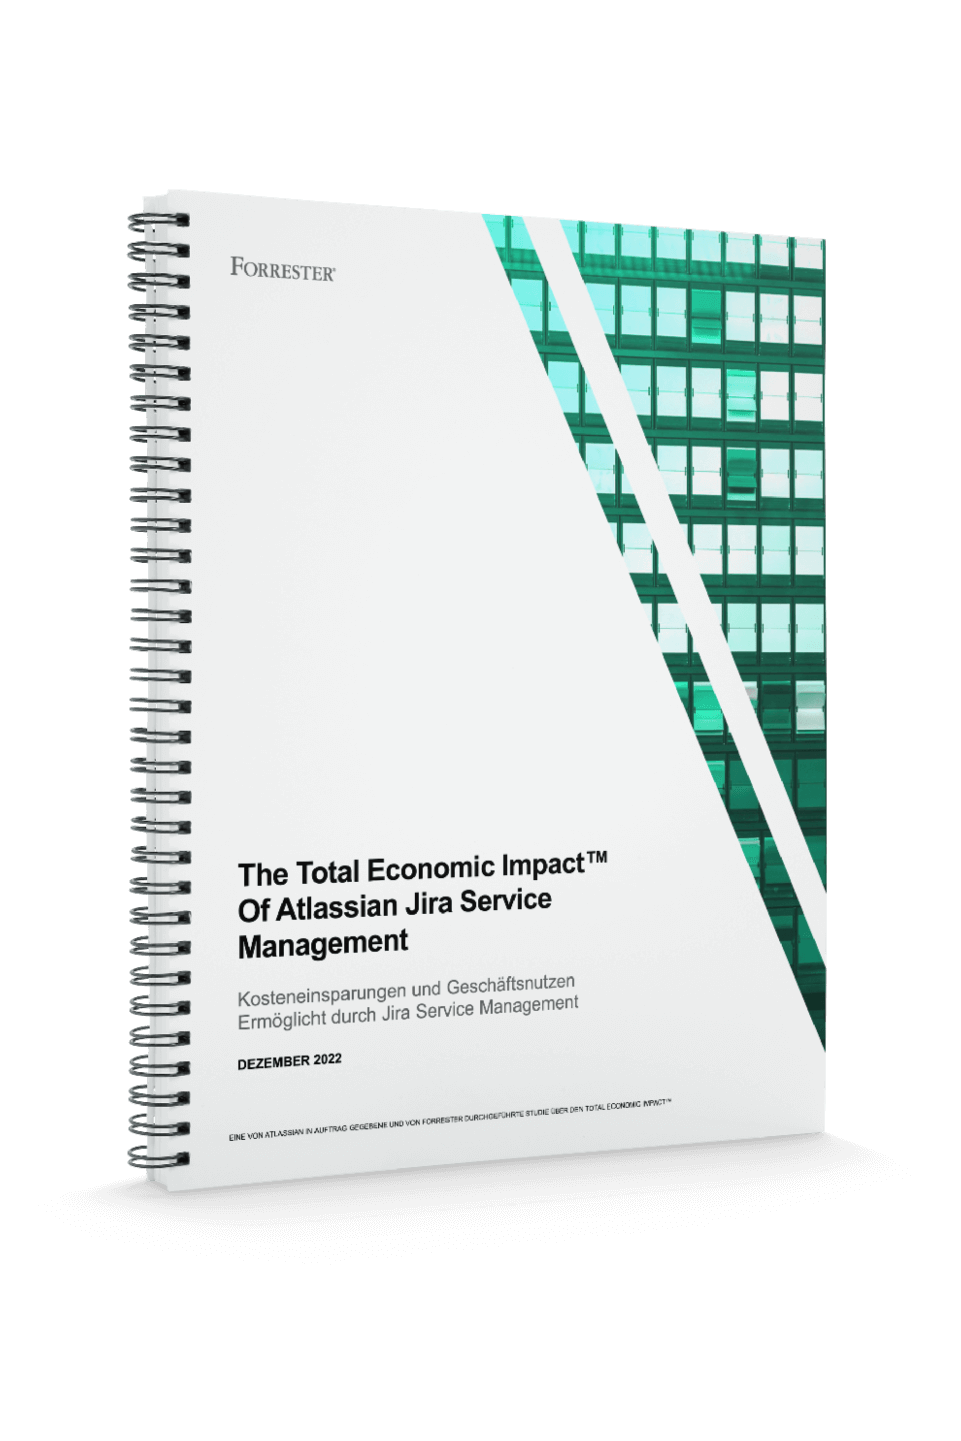 PDF-Vorschau von "The Total Economic Impact™ Of Atlassian For ITSM"